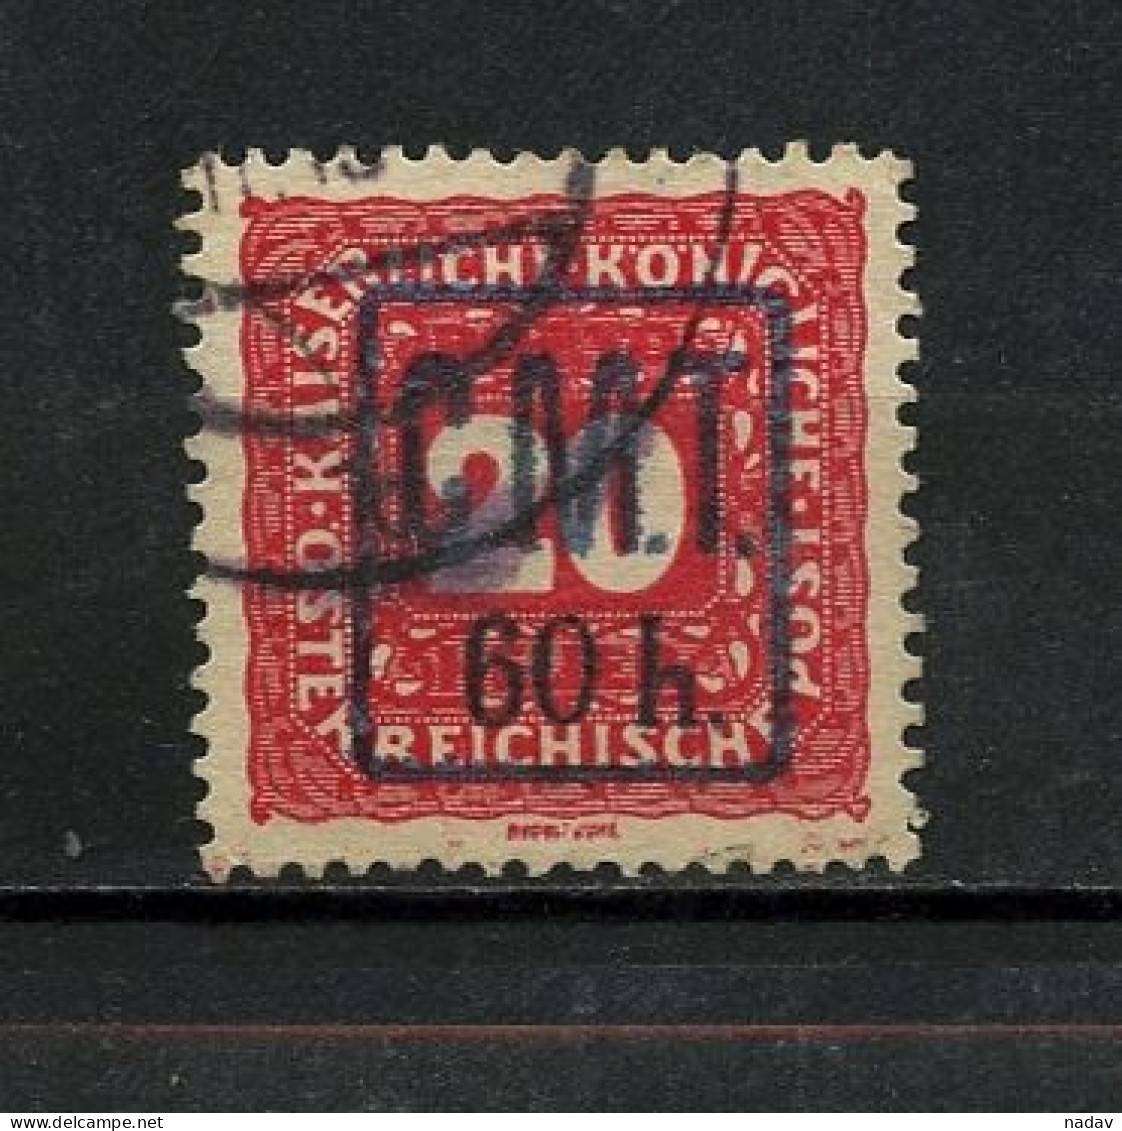 1919, Kolomea (Romanian Occupation), Postage Due Stamps -  Used - Ukraine & Westukraine